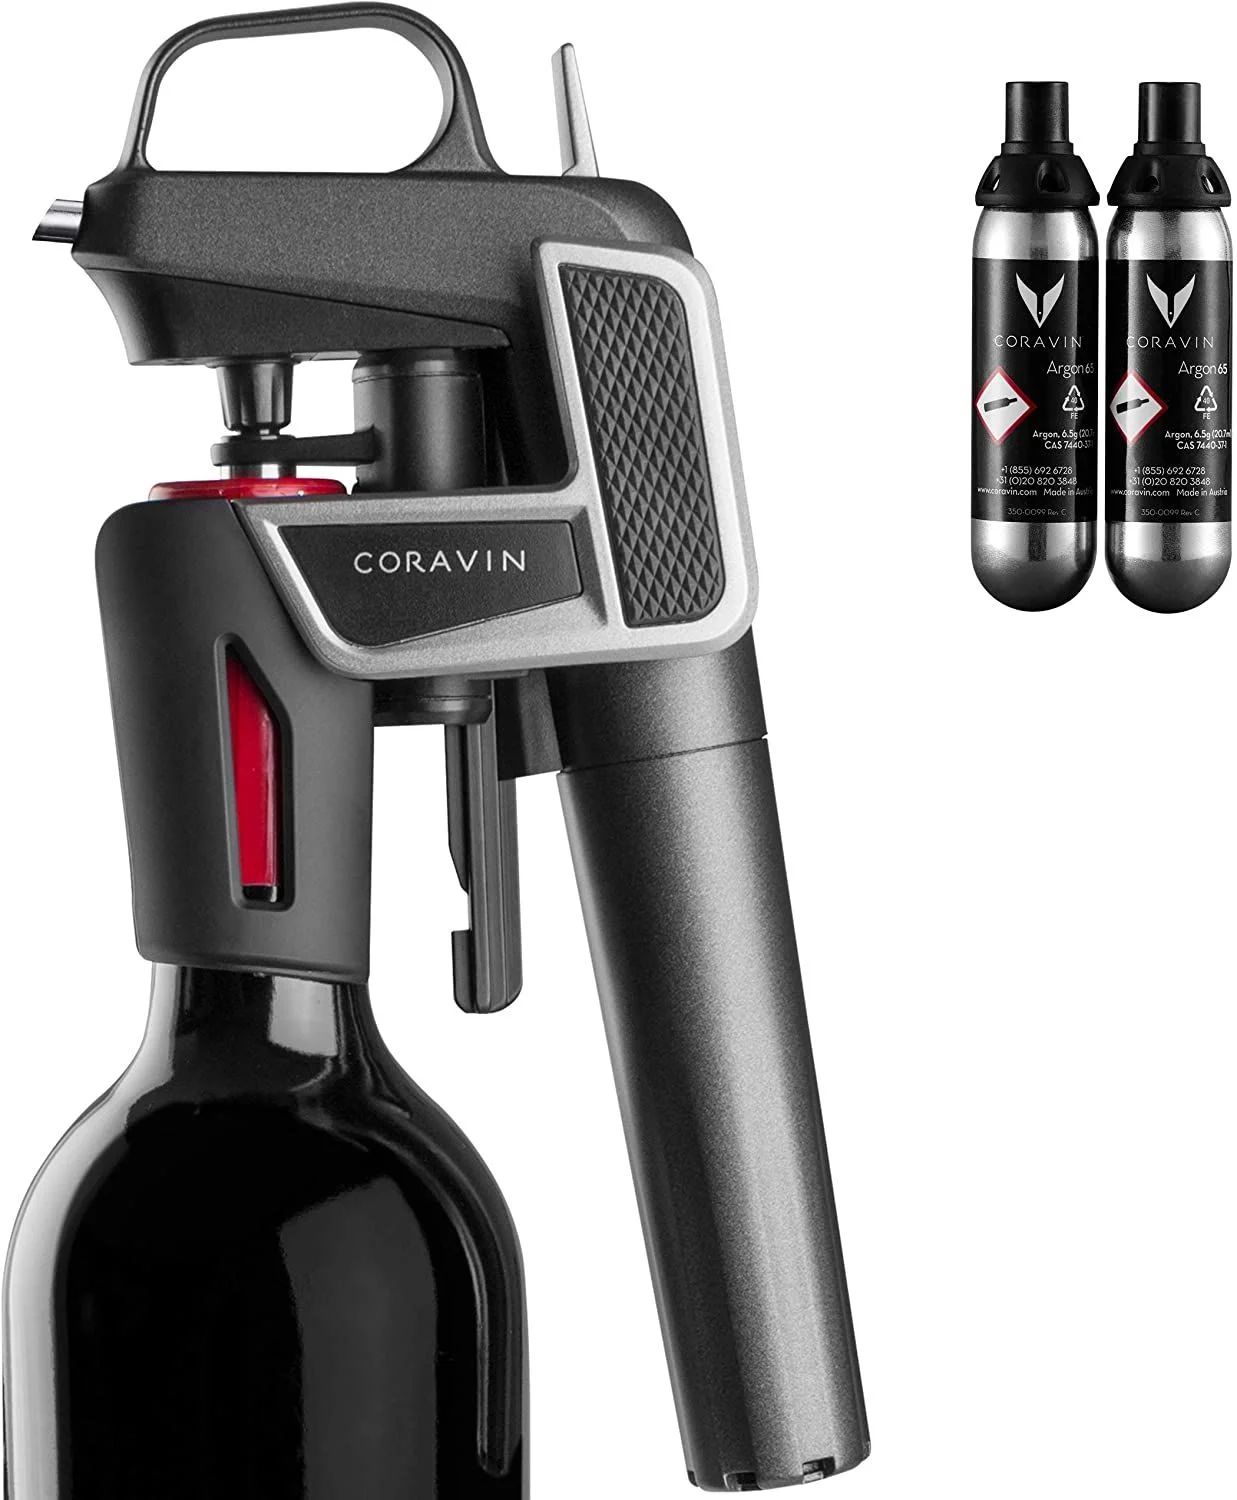 CORAVINモデルワインシステム ブラック 100010